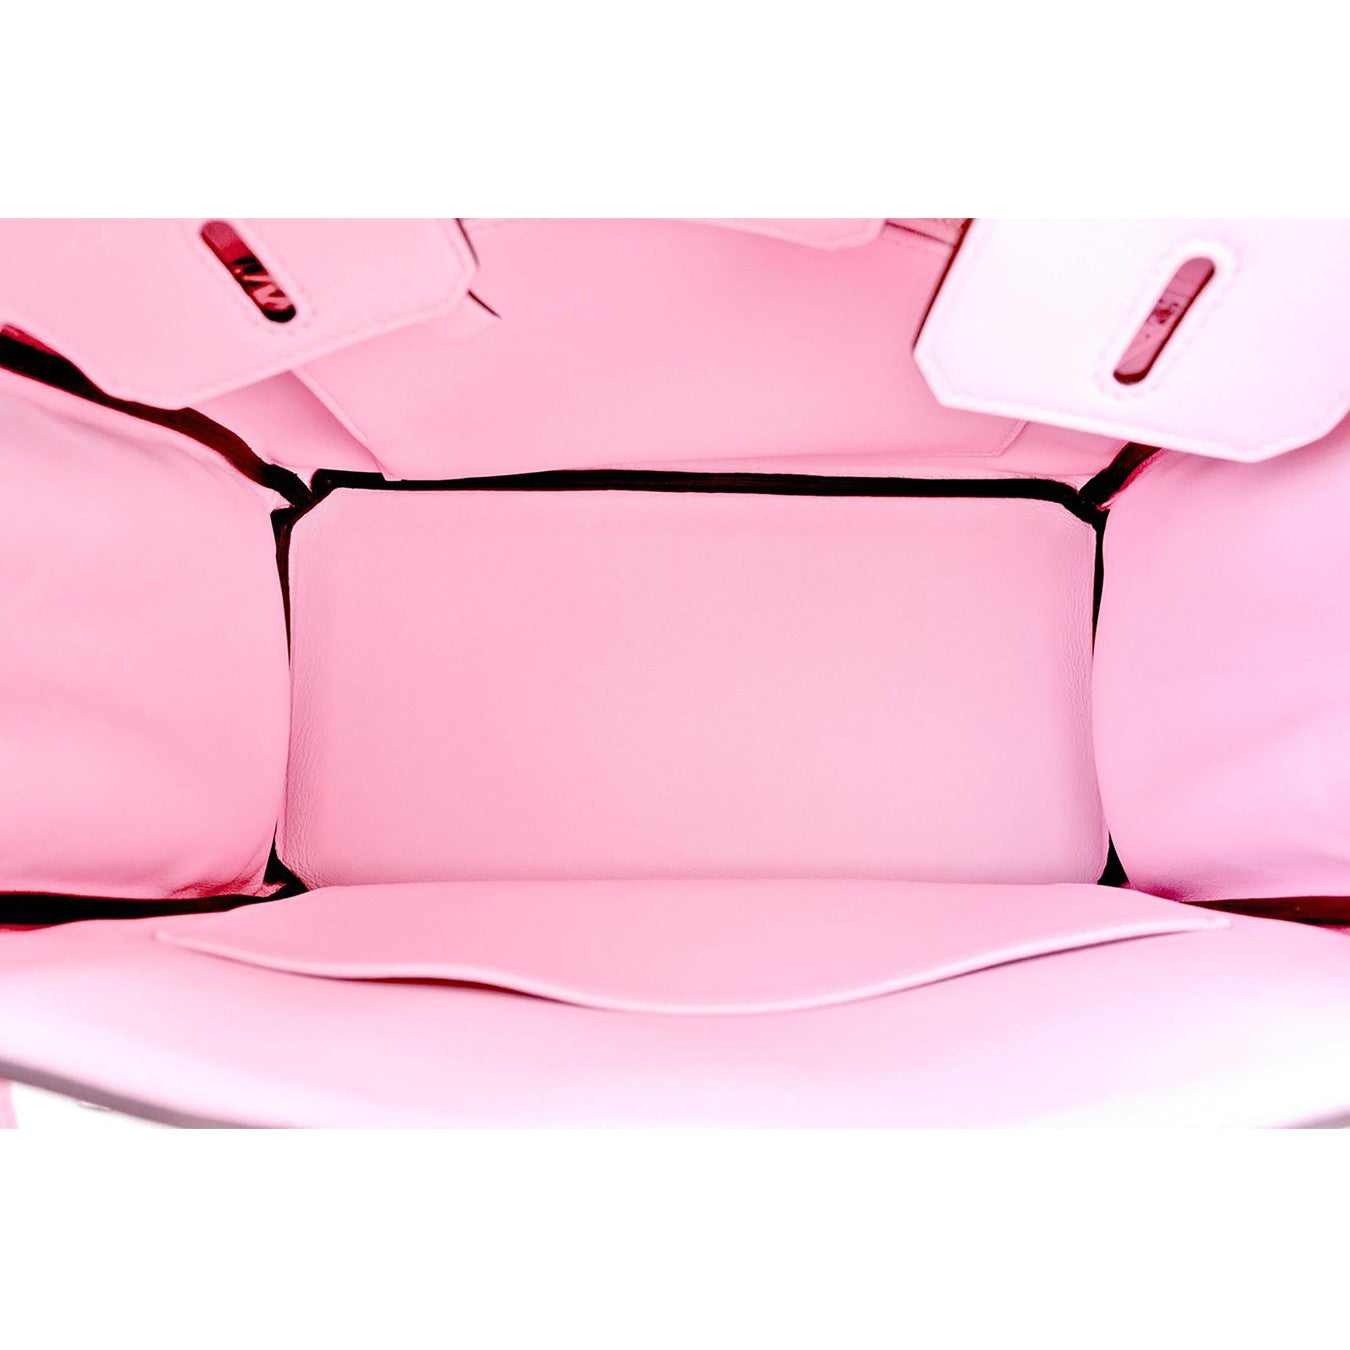 Hermes Birkin Bag 25cm Rose Sakura Pink Swift Palladium Hardware